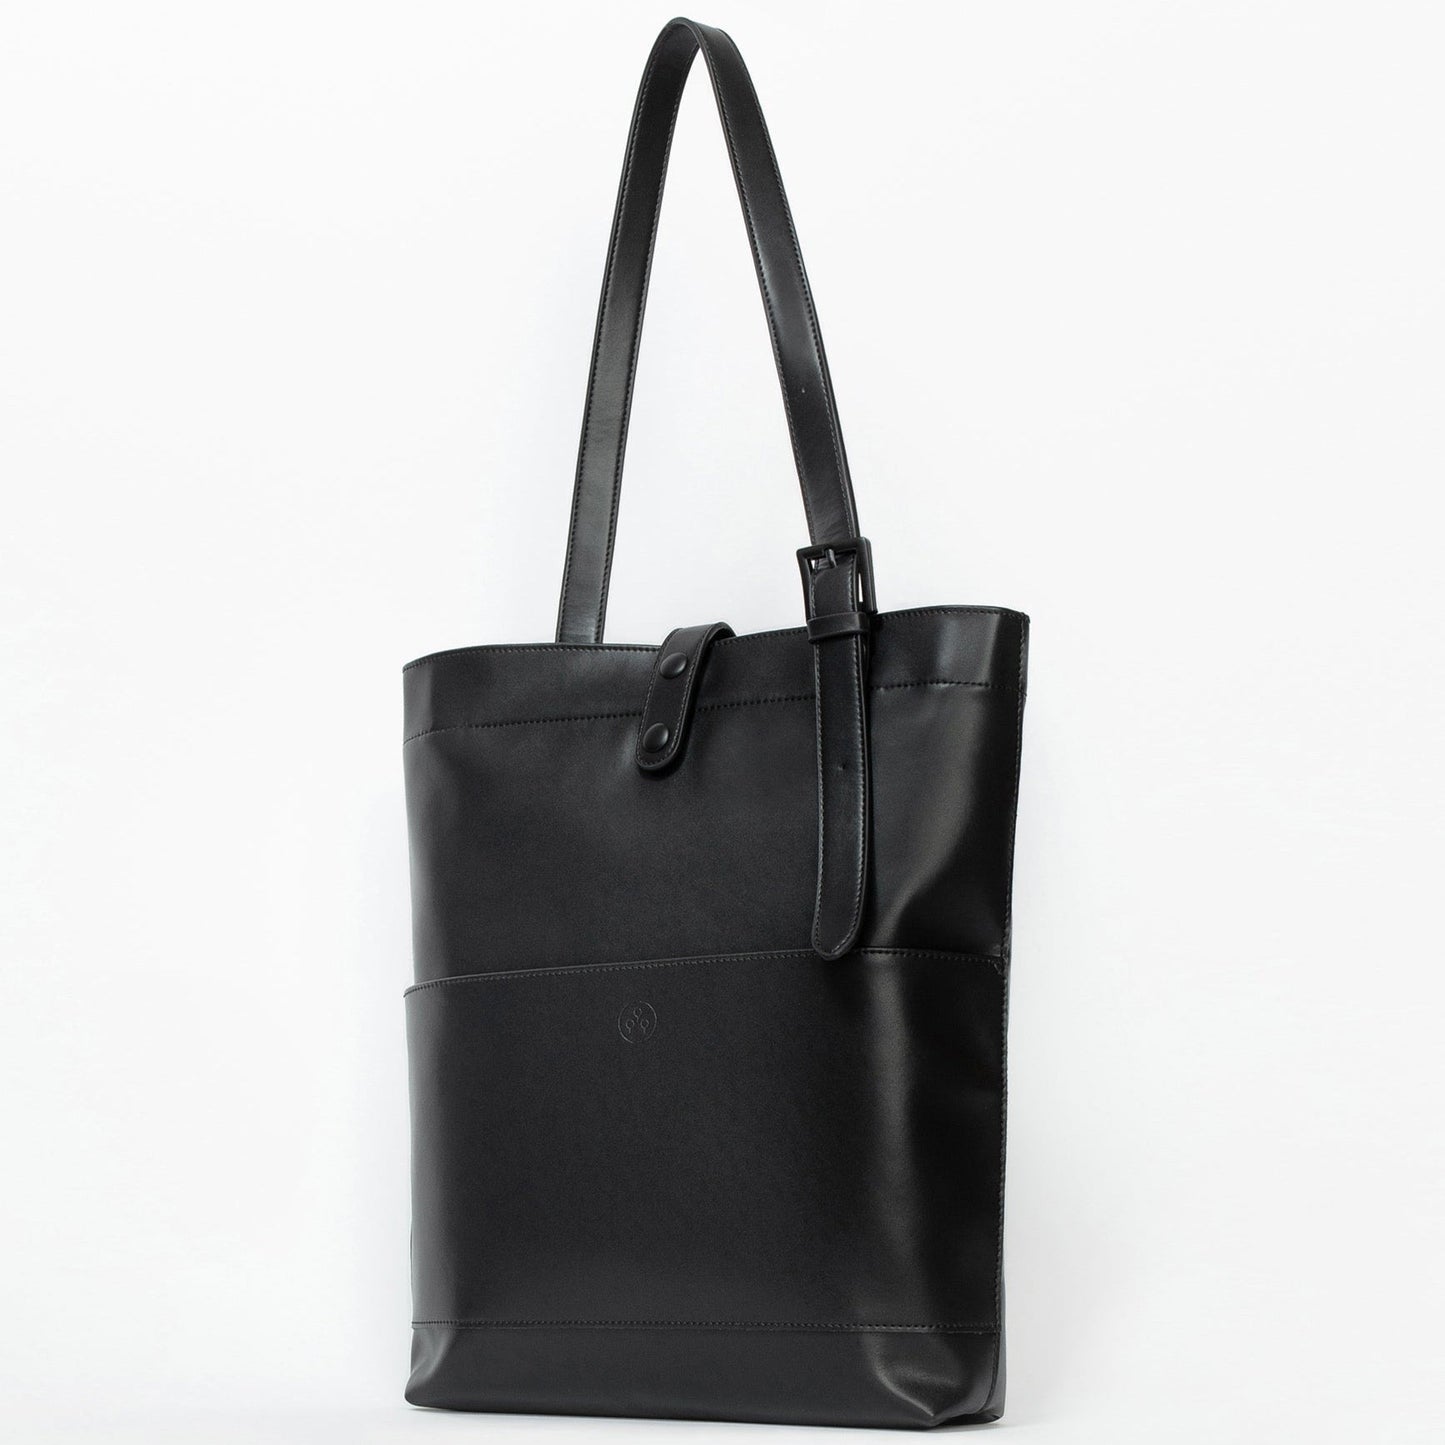 KIWEE Tote Bag - Black